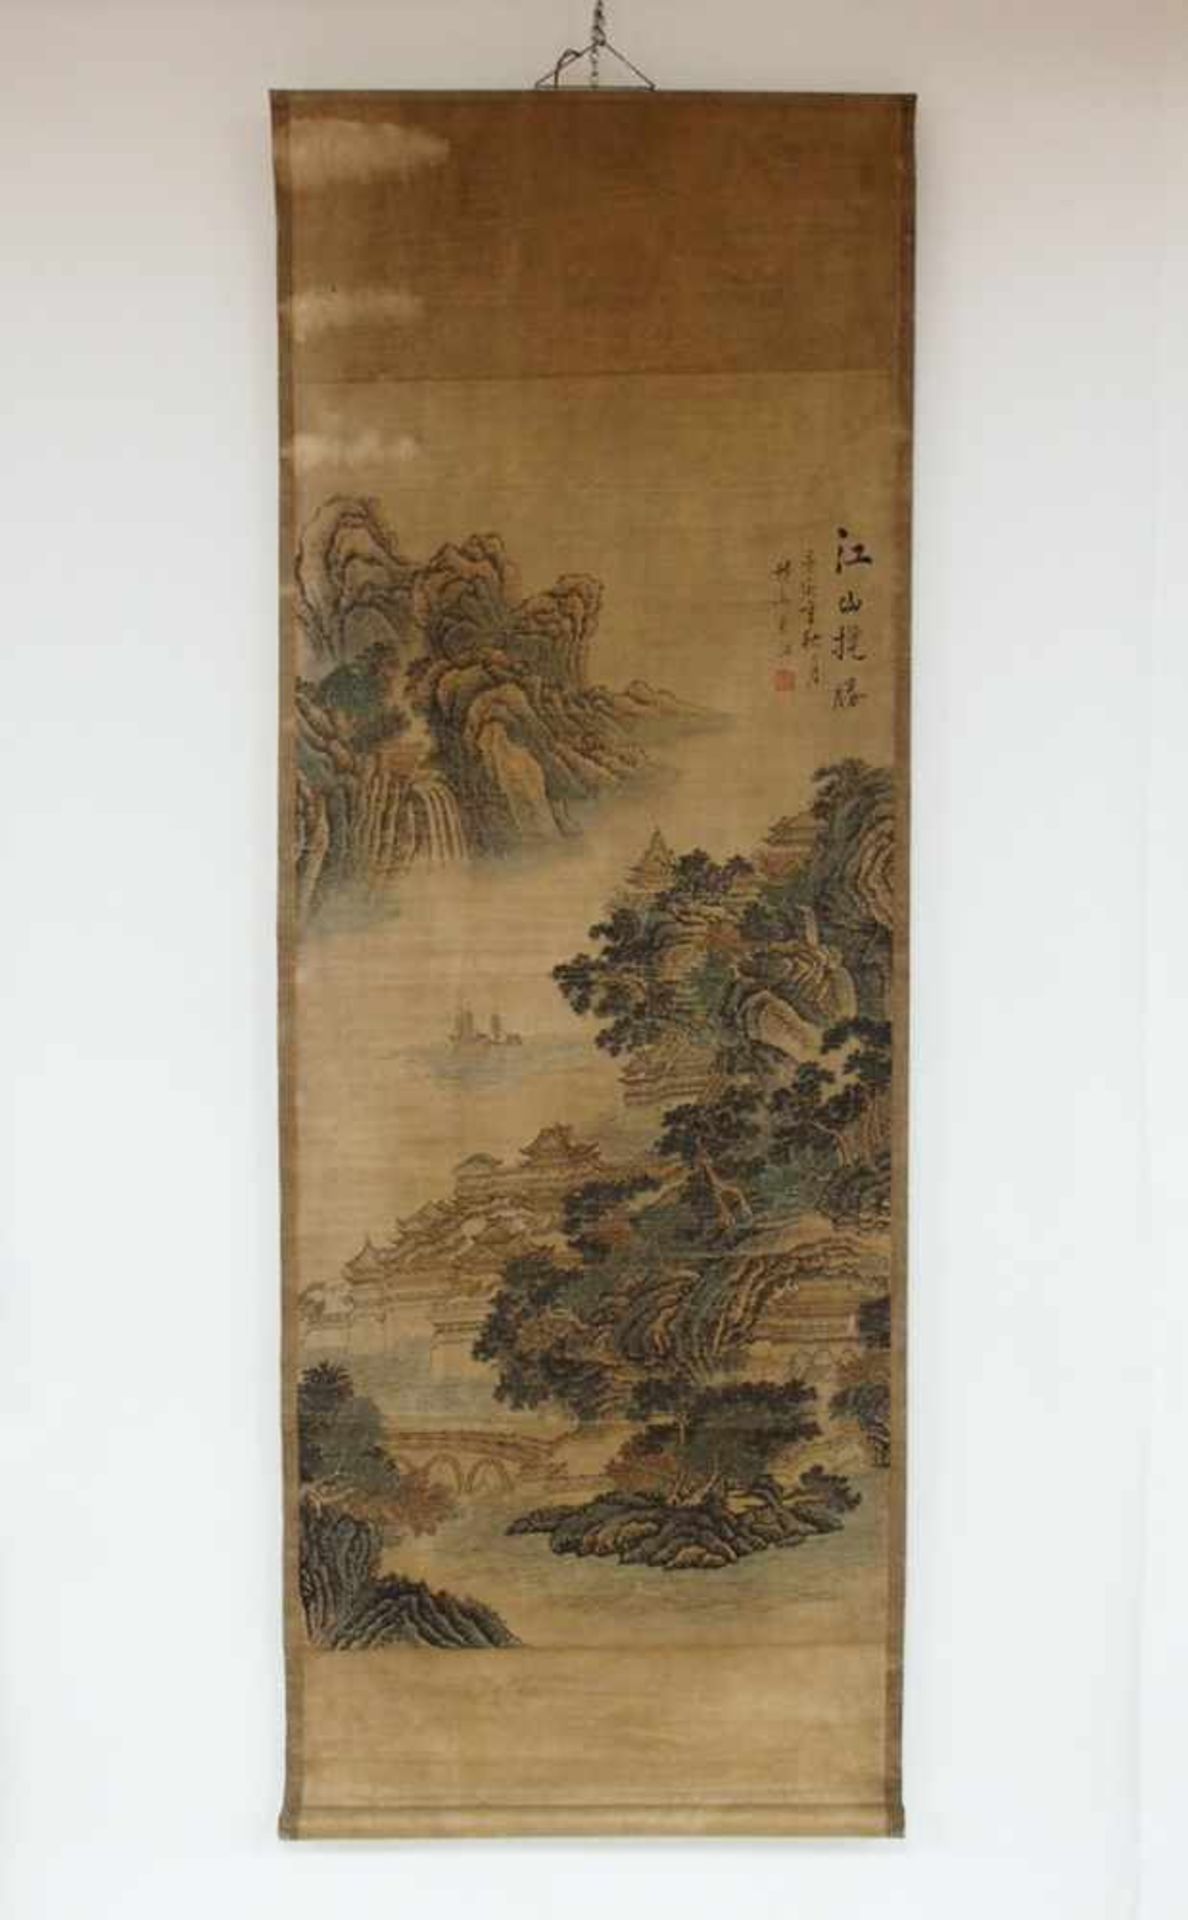 Rollbild mit LandschaftsdarstellungFarbholzschnitt, China 19. Jahrhundert, 126 x 60 cm- - -25.00 %